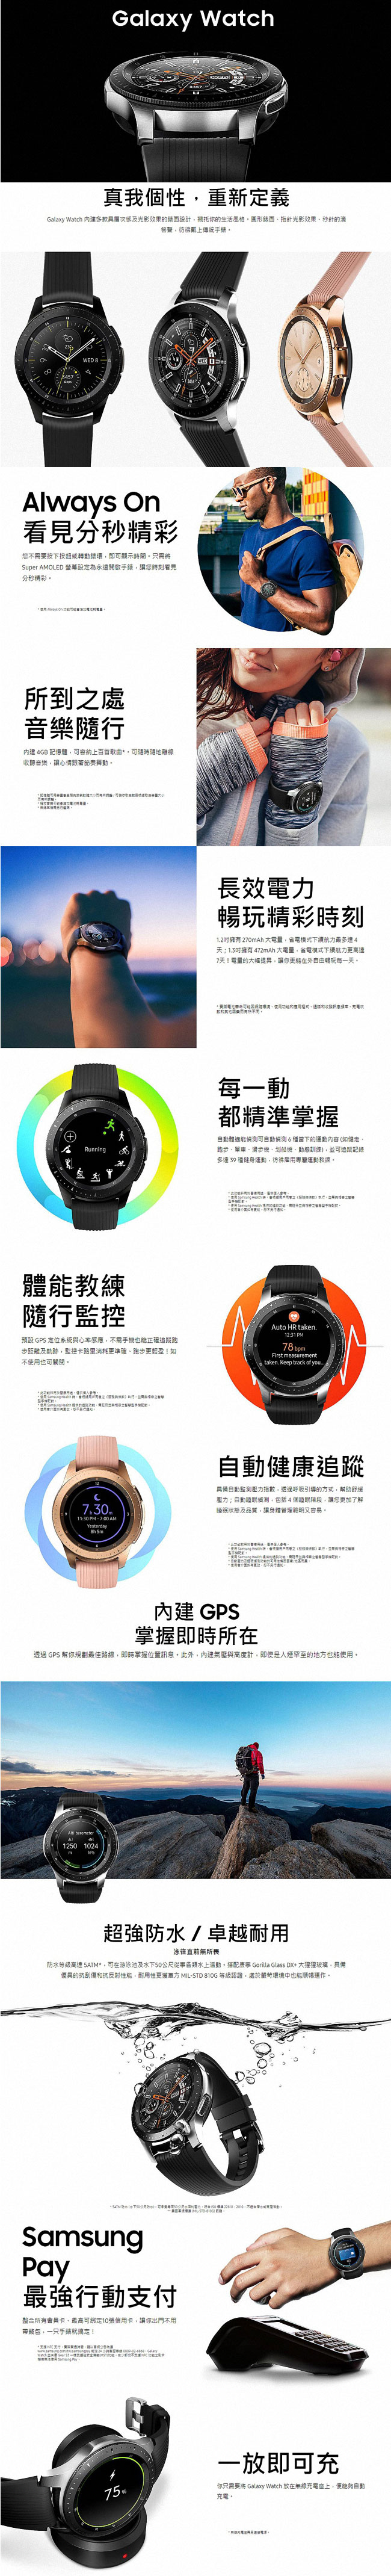 SAMSUNG Galaxy Watch 46mm 智慧手錶 藍牙版